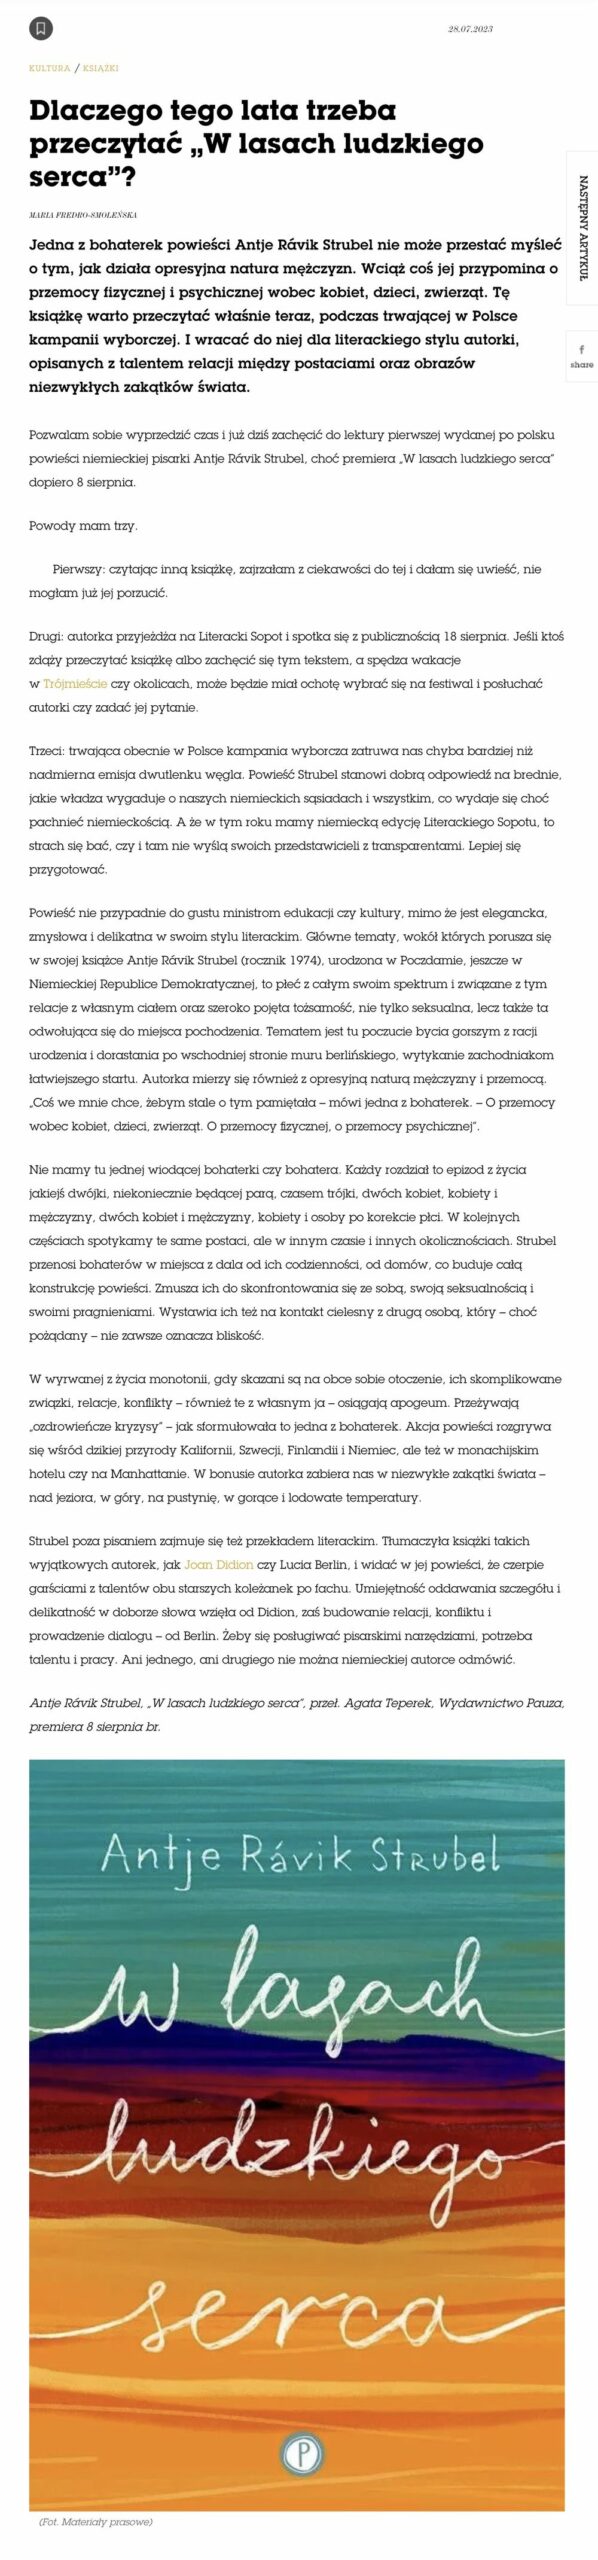 www.vogue .pl a recenzja ksiazki w lasach ludzkiego serca antje ravik strubel1440x900 2 scaled